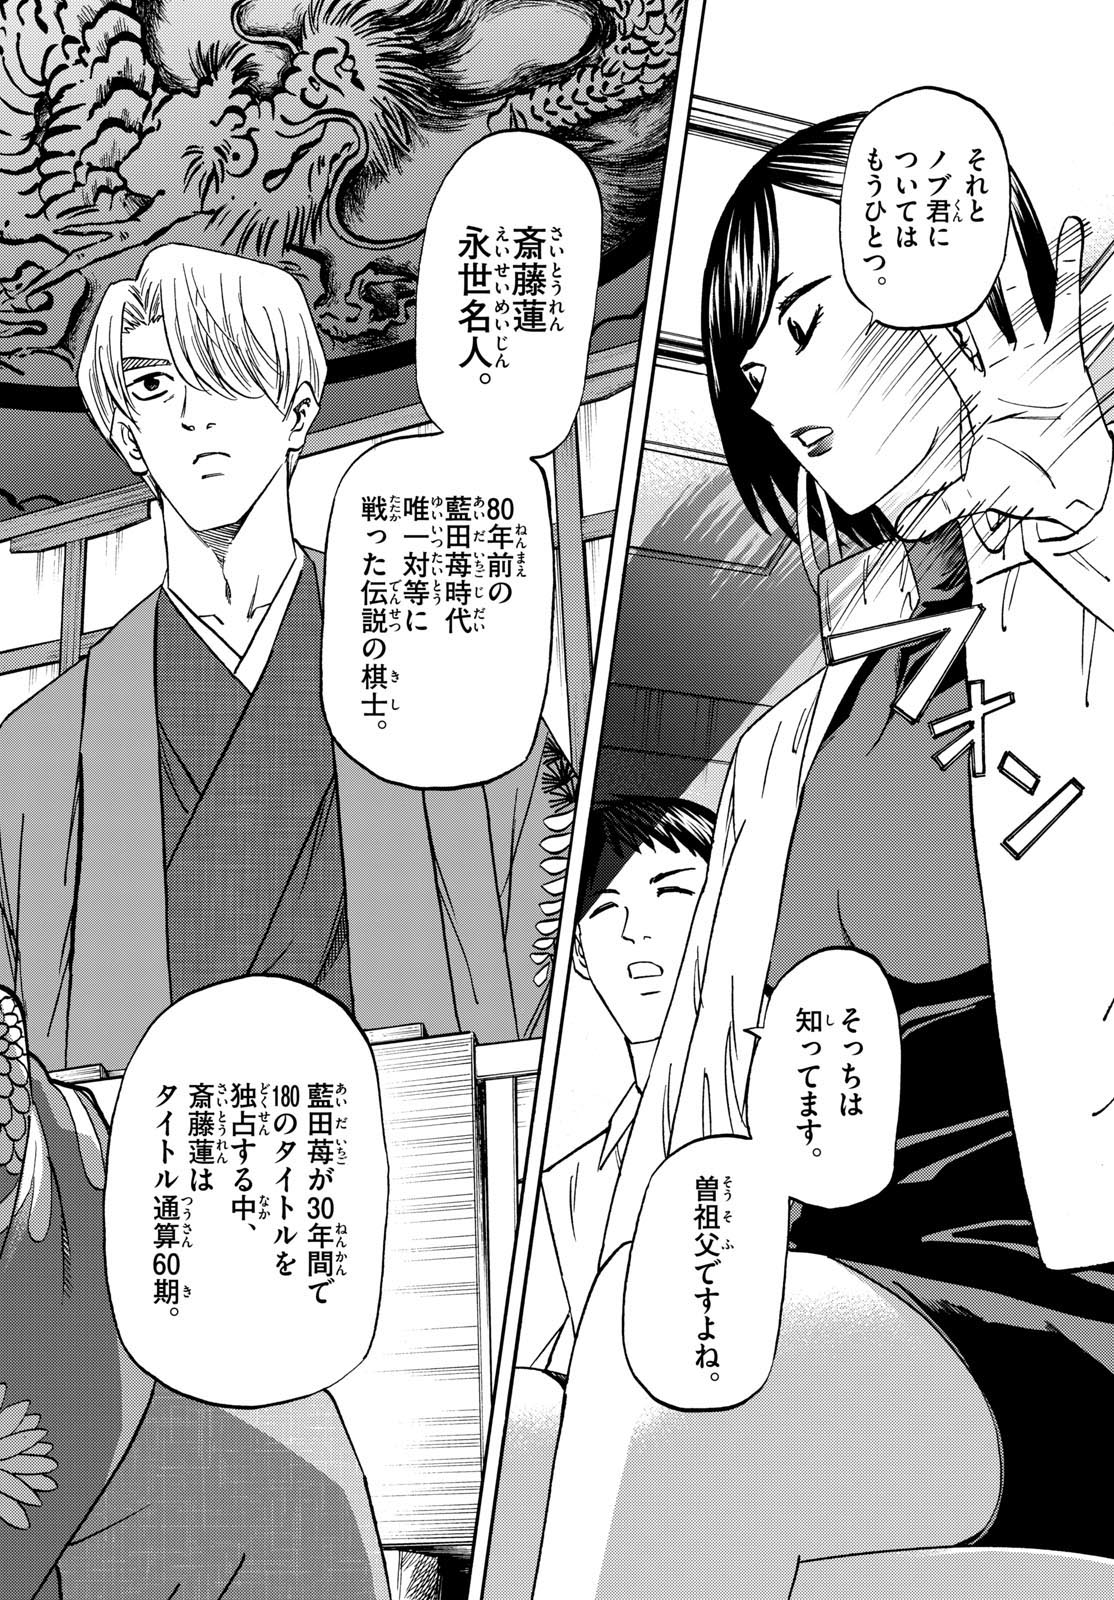 Tatsu to Ichigo - Chapter 187 - Page 2